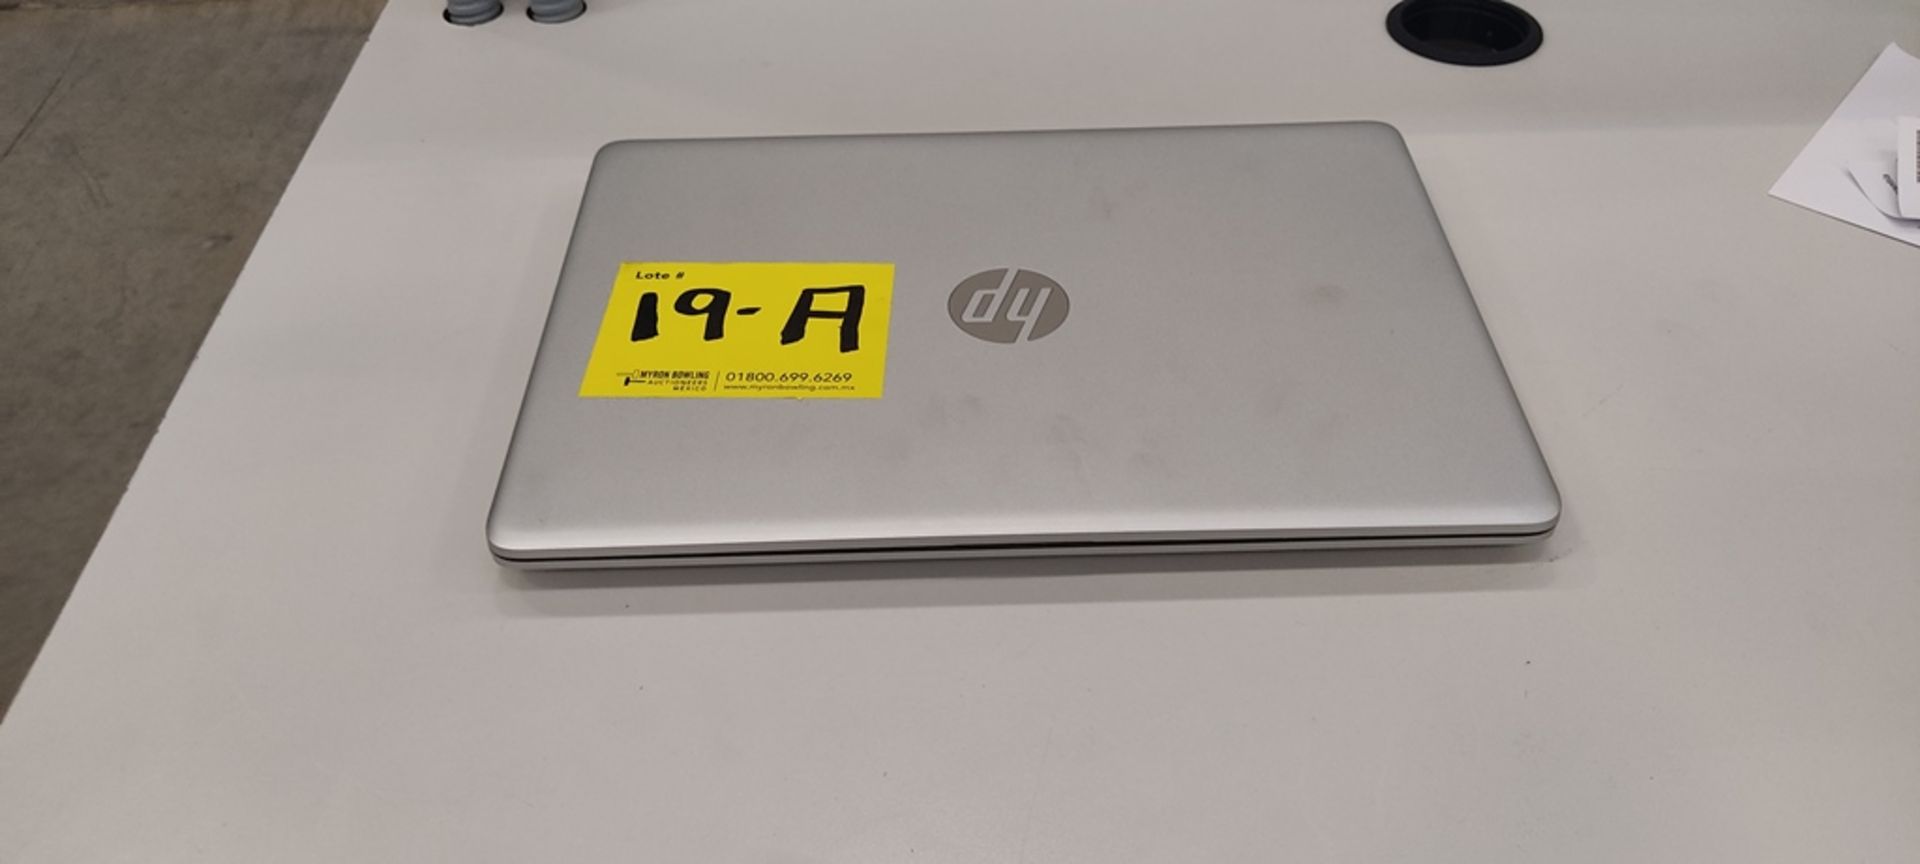 1 Computadora tipo laptop Marca Hp, Modelo RTL8821CE, Serie 14-DK1508La, Color Gris, unidad de esta